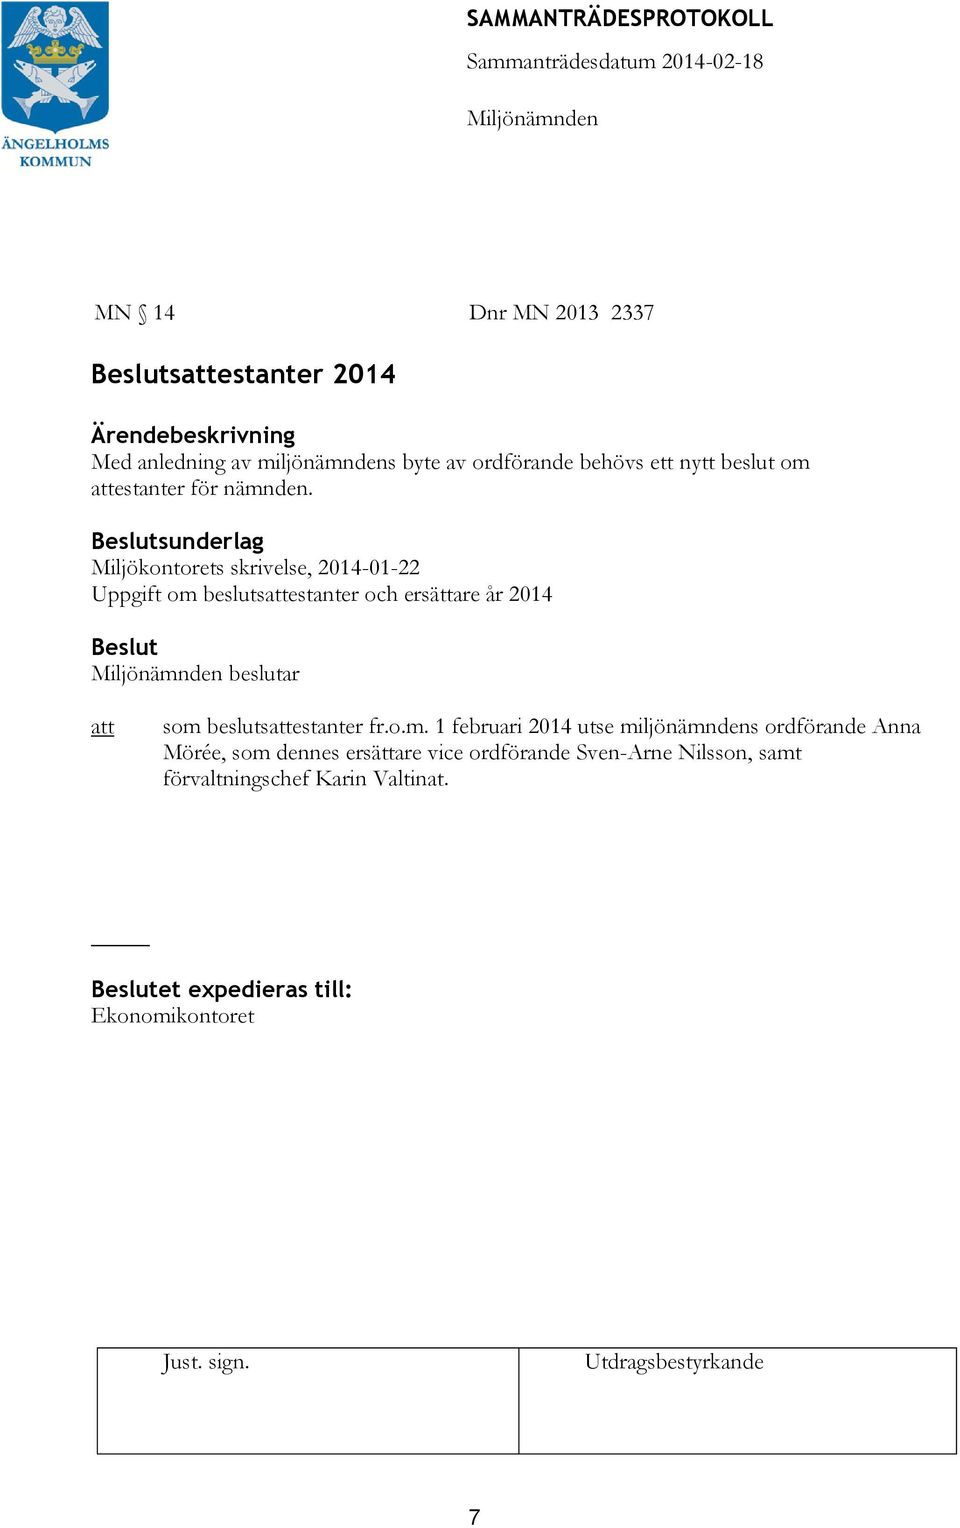 sunderlag Miljökontorets skrivelse, 2014-01-22 Uppgift om beslutsestanter och ersättare år 2014 beslutar som